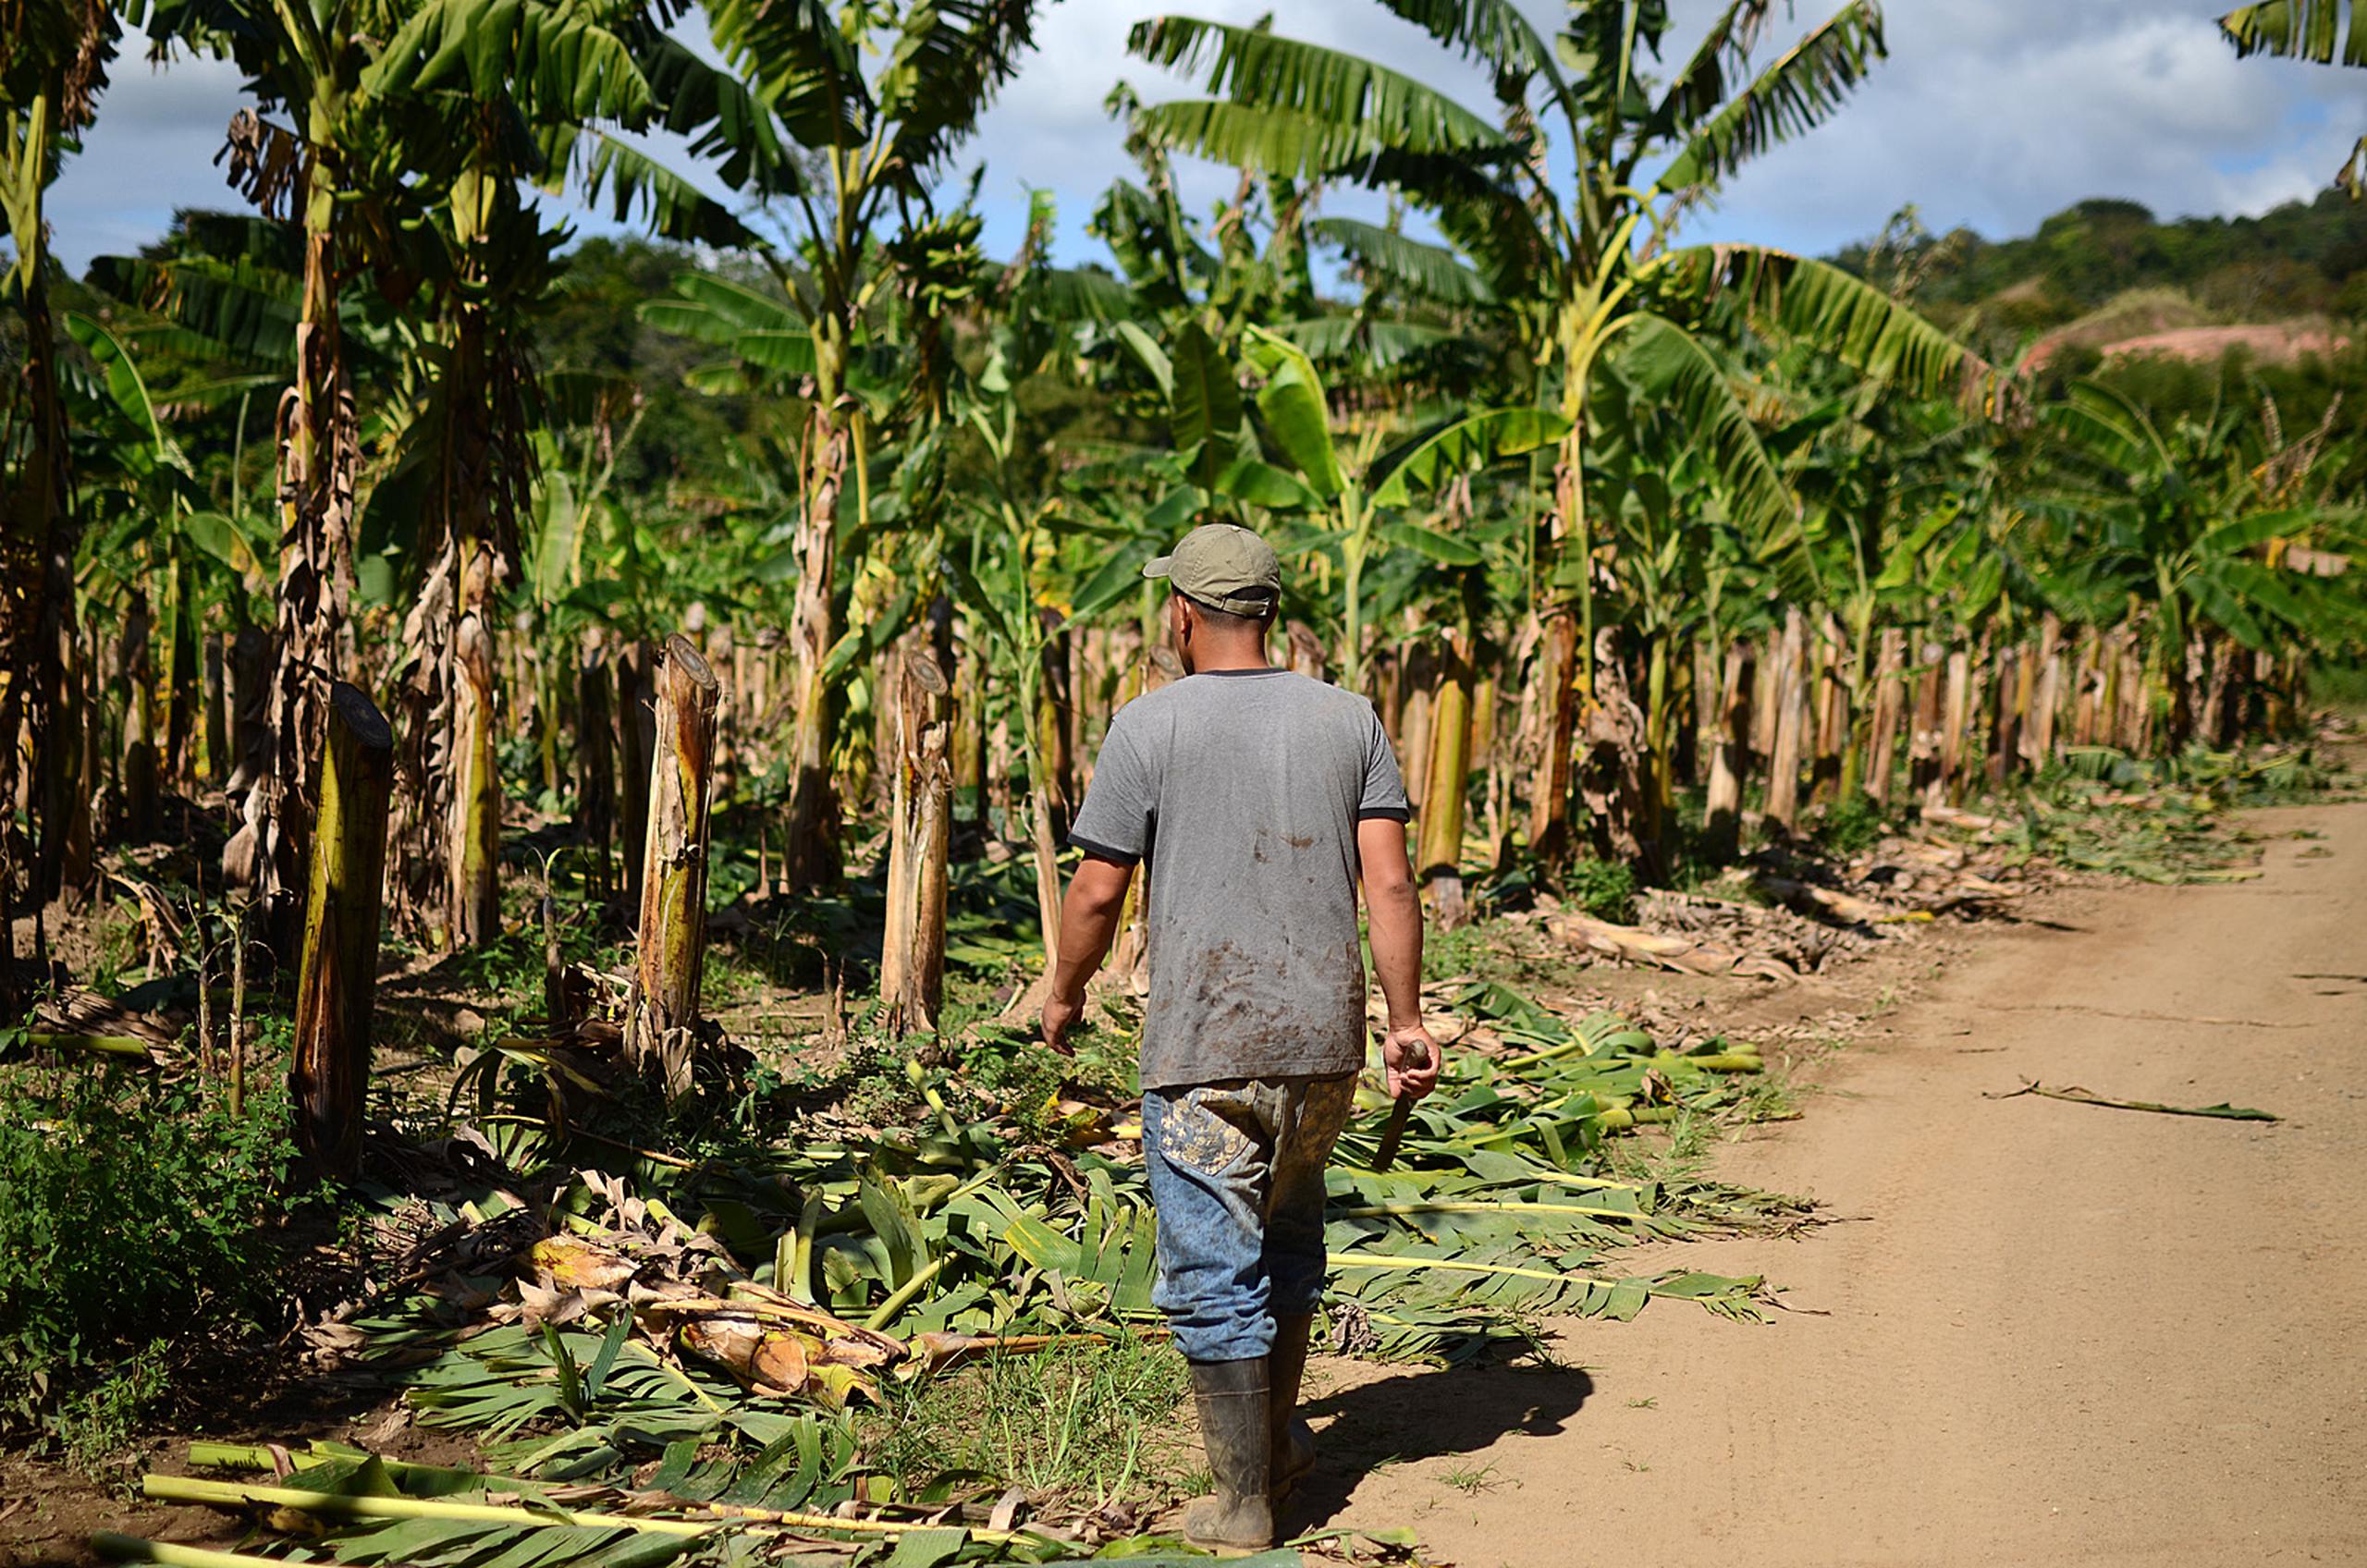 El secretario de Agricultura, Ramón González, informó que los agrónomos de la agencia están listos para evaluar, de inmediato, los posibles daños de Grace y determinar si es necesario solicitar un estado de emergencia para la agricultura.